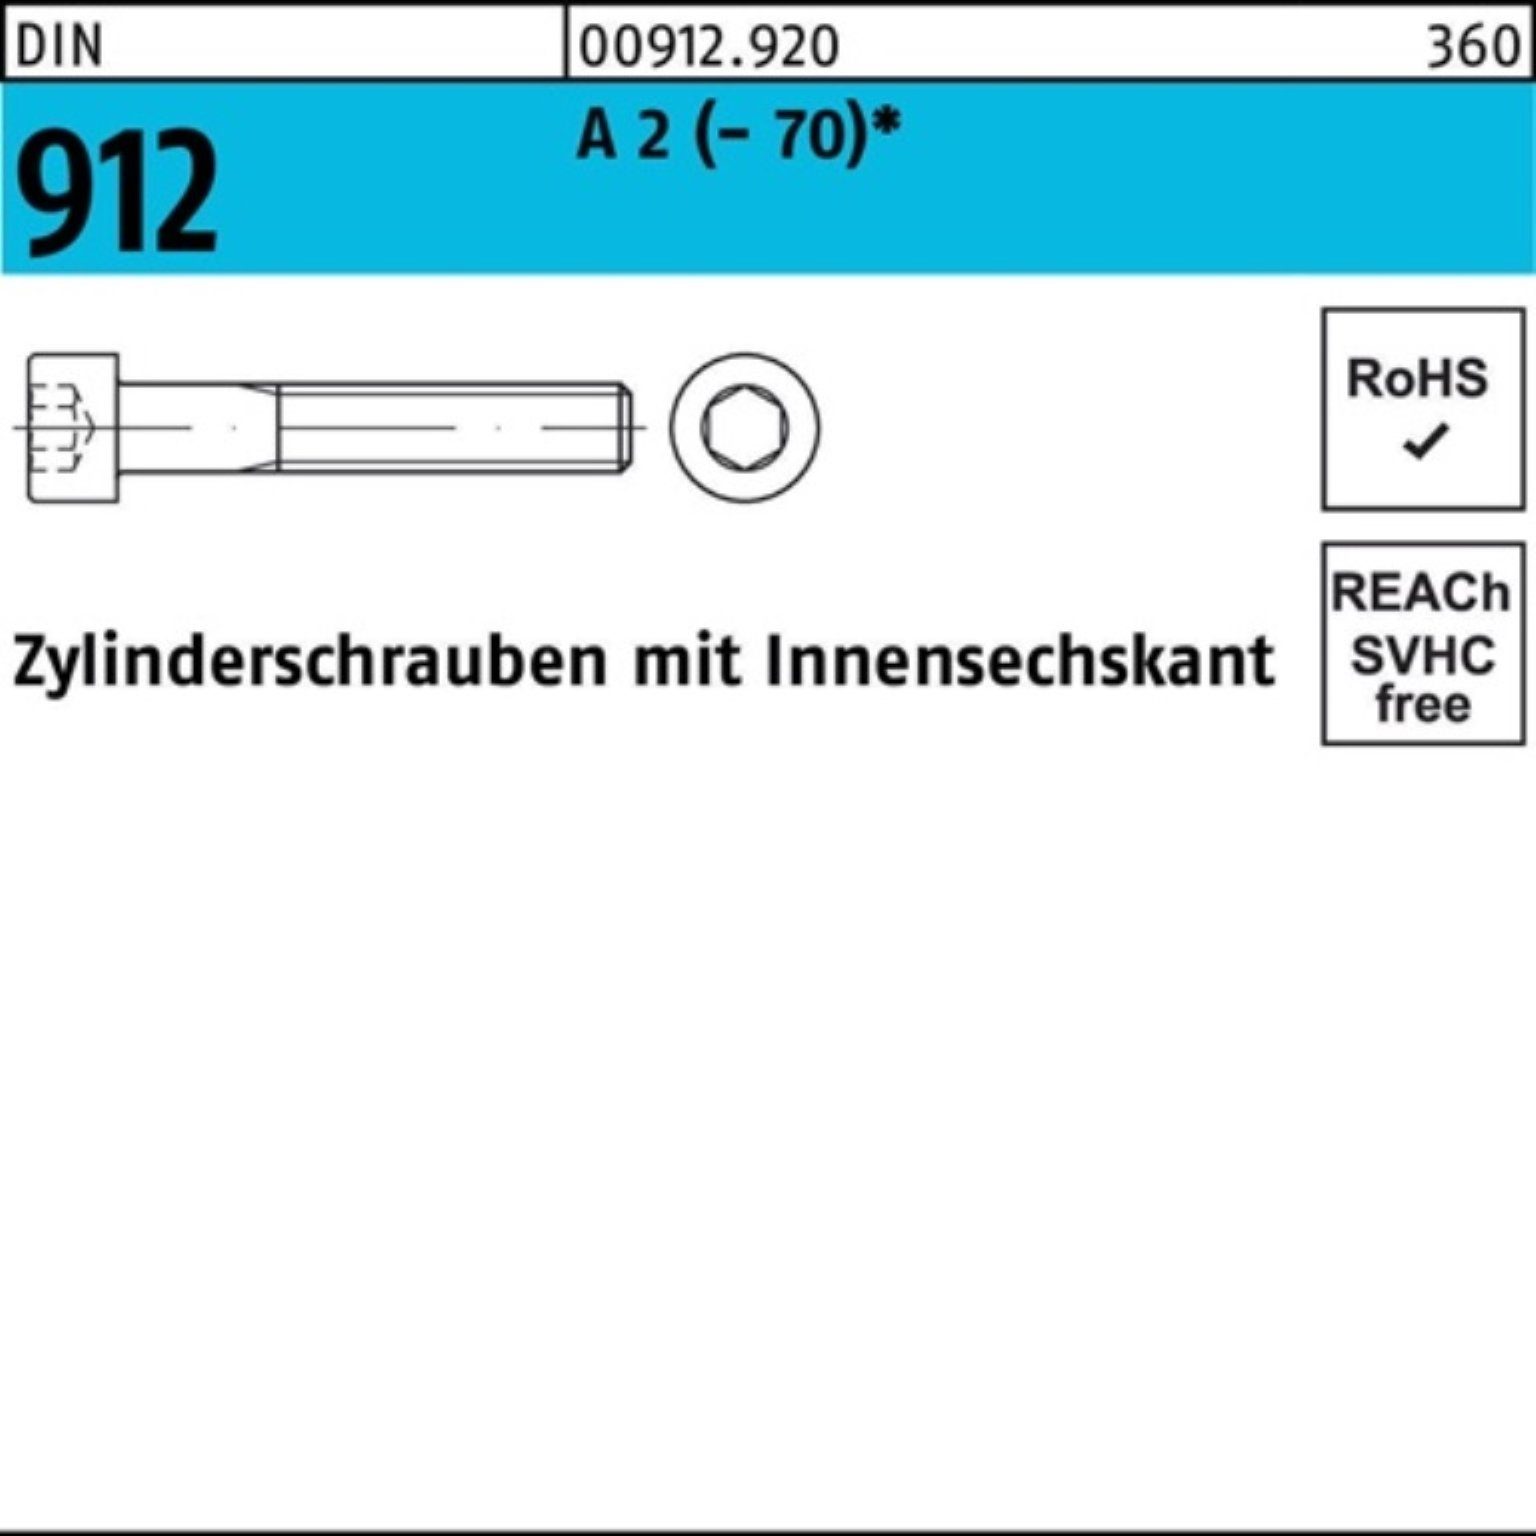 A Zylinderschraube Innen-6kt 95 DIN 100 Reyher Zylinderschraube 2 (70) St M6x Pack 100er 912